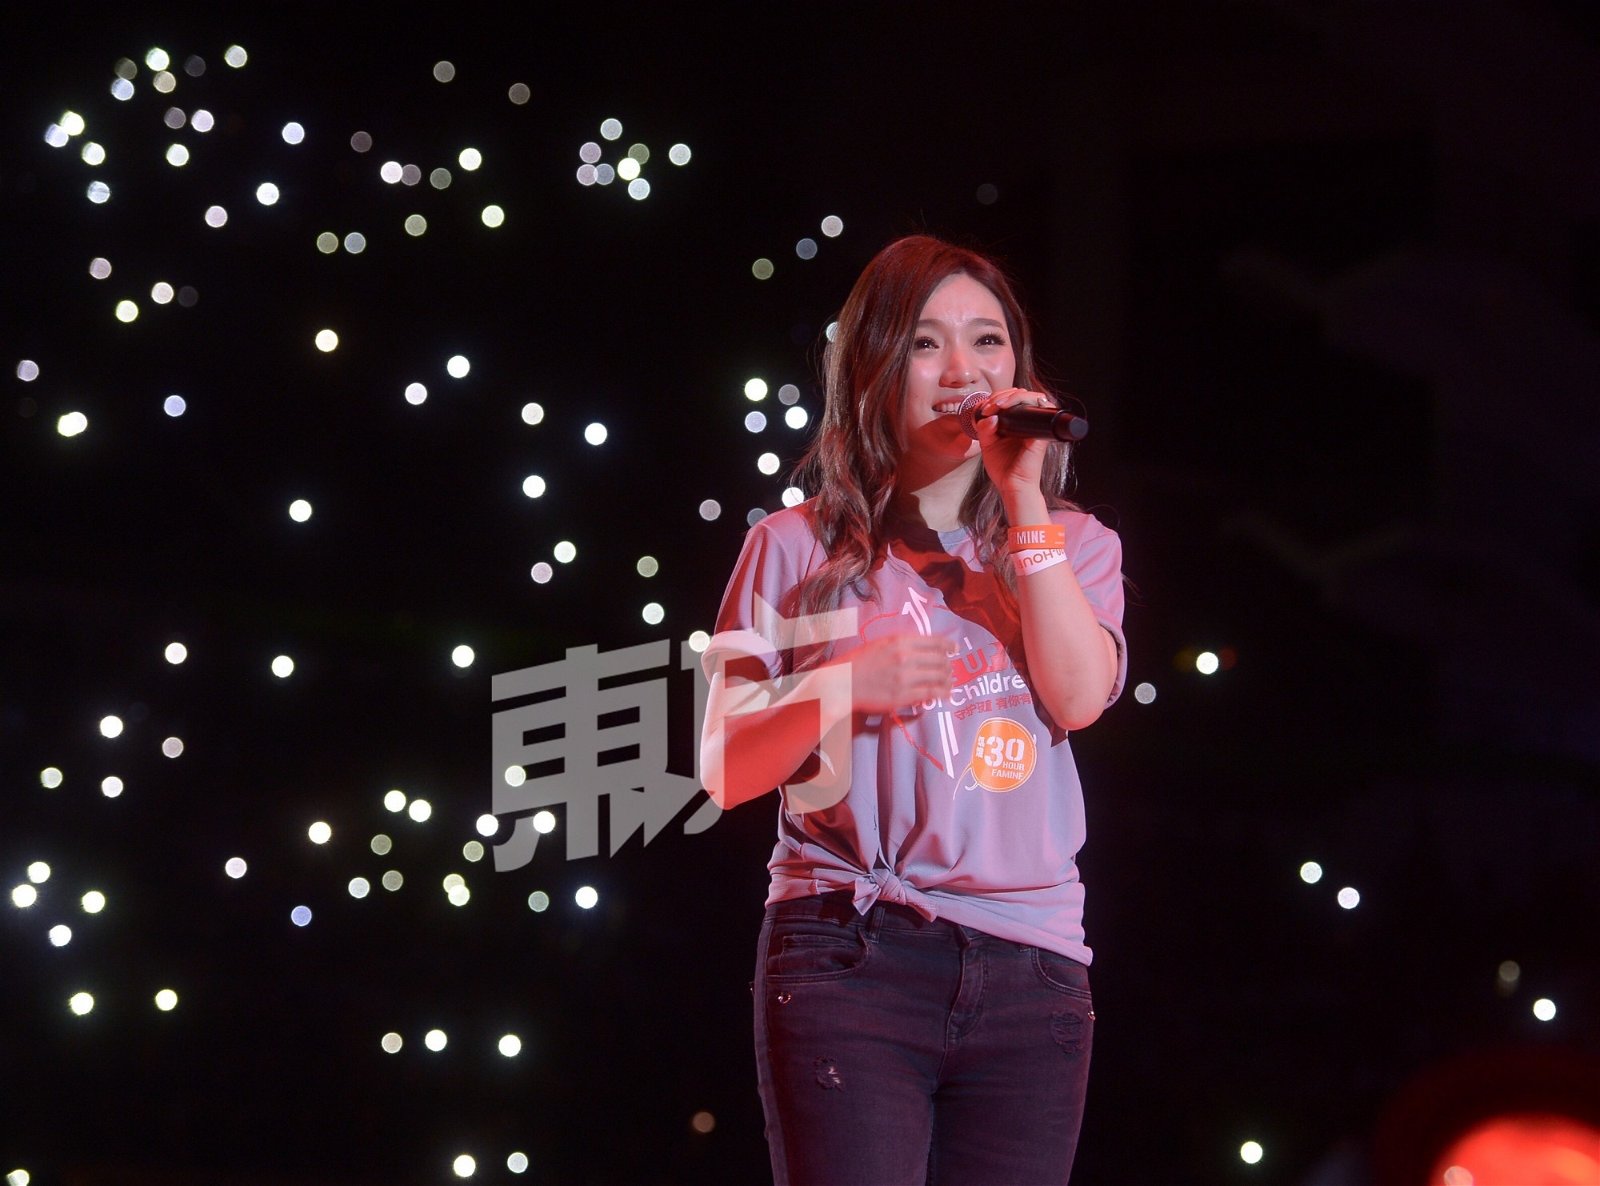 第一次参与《饥饿30》活动的阎奕格在现场演唱《也可以》和新歌《我有我自己》。